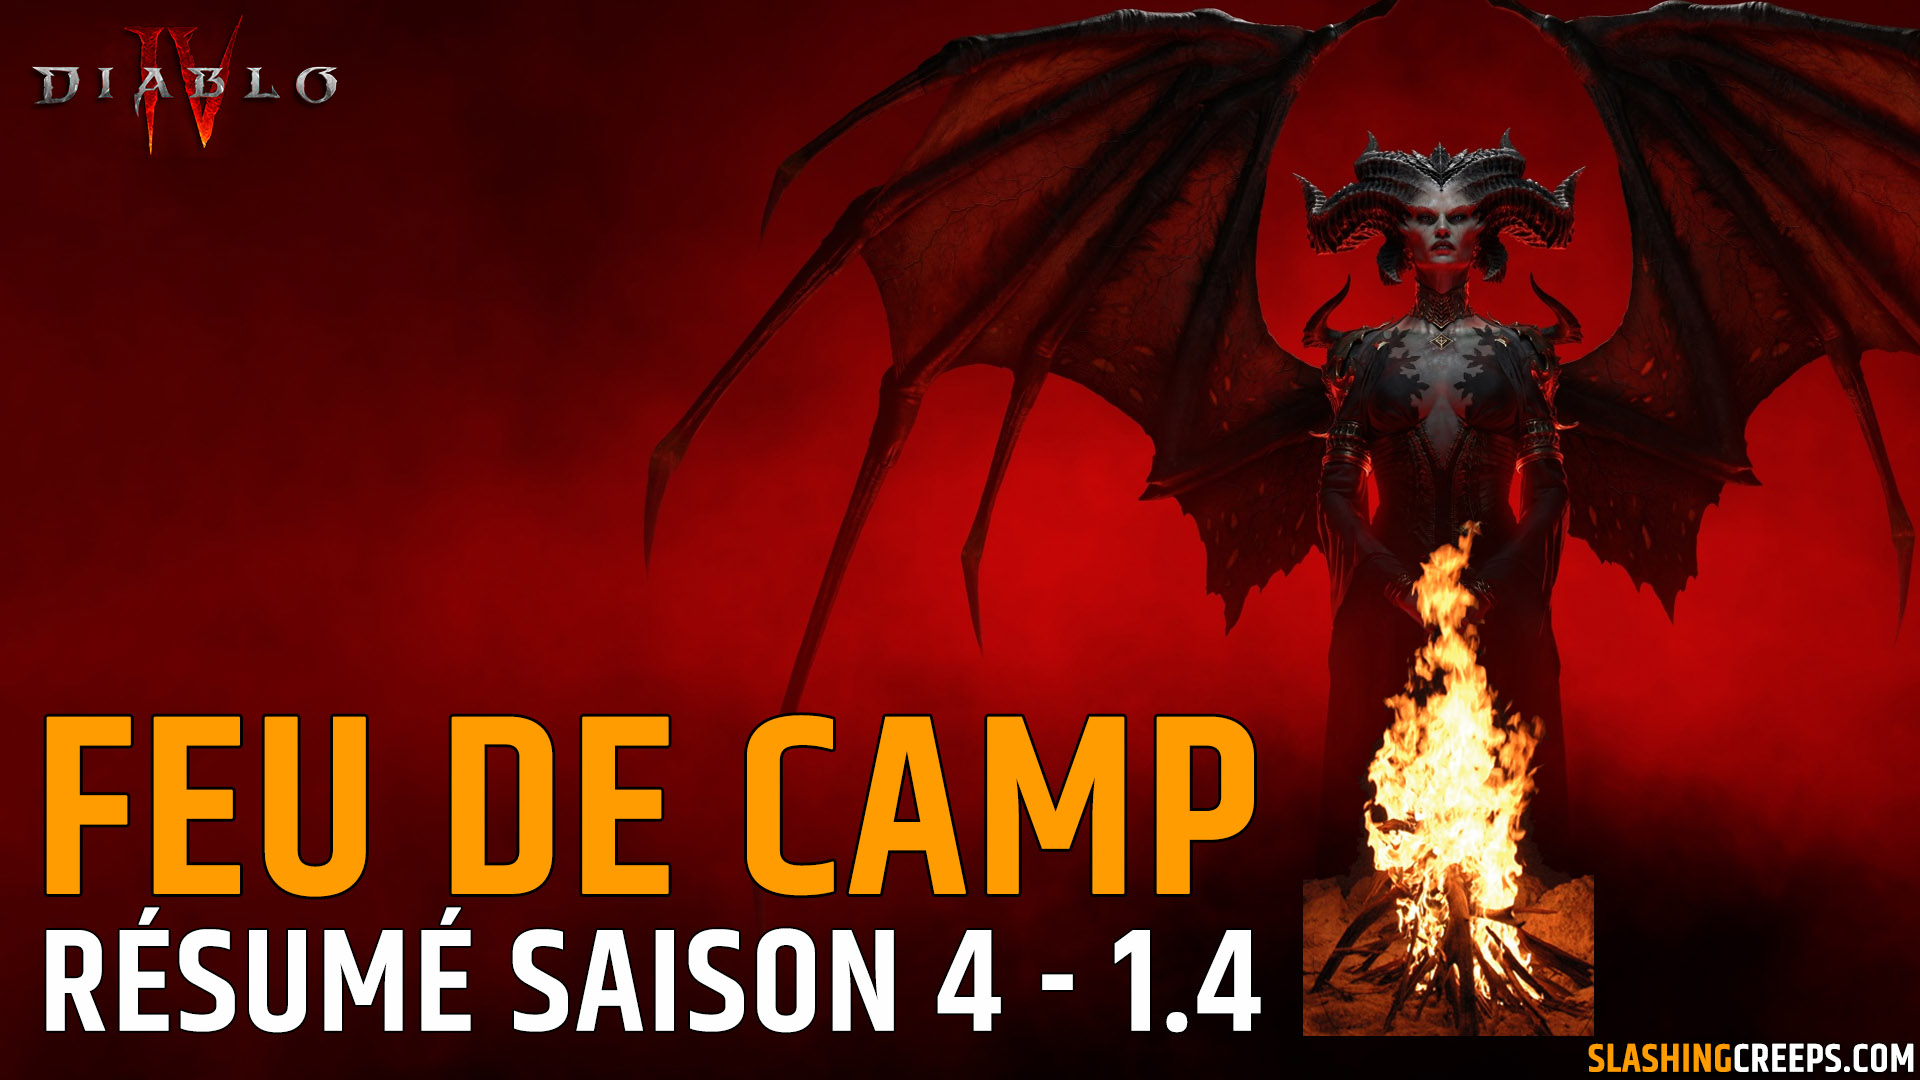 Campfire Summary Season 4 Diablo 4 May Patch 1.4